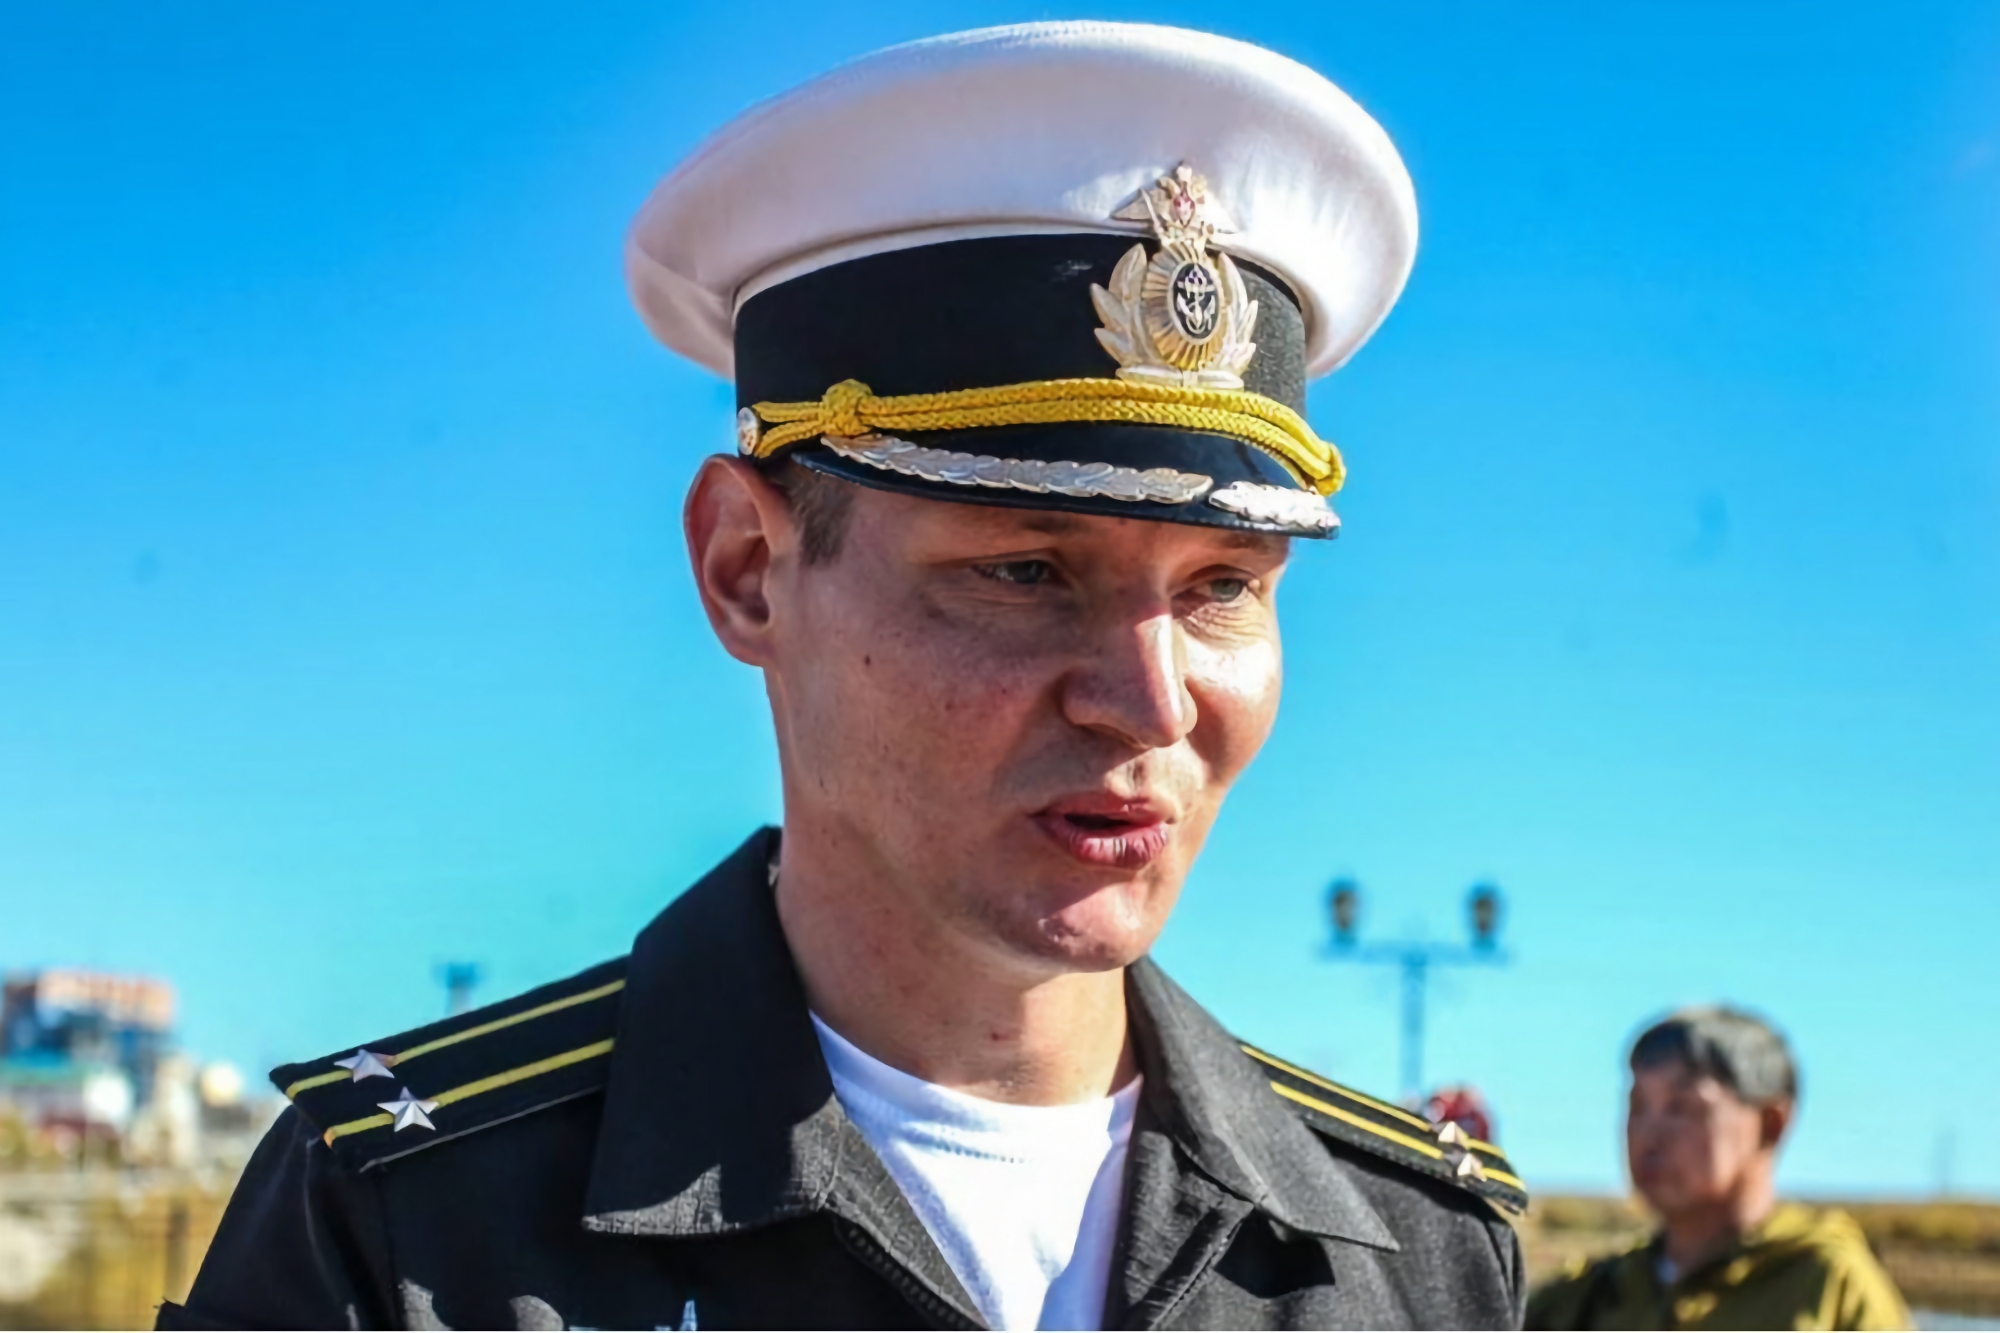 Stanislav Rzhitsky, dowódca okrętu podwodnego Krasnodar, zabity w Rosji, śledzony przez aplikację Strava